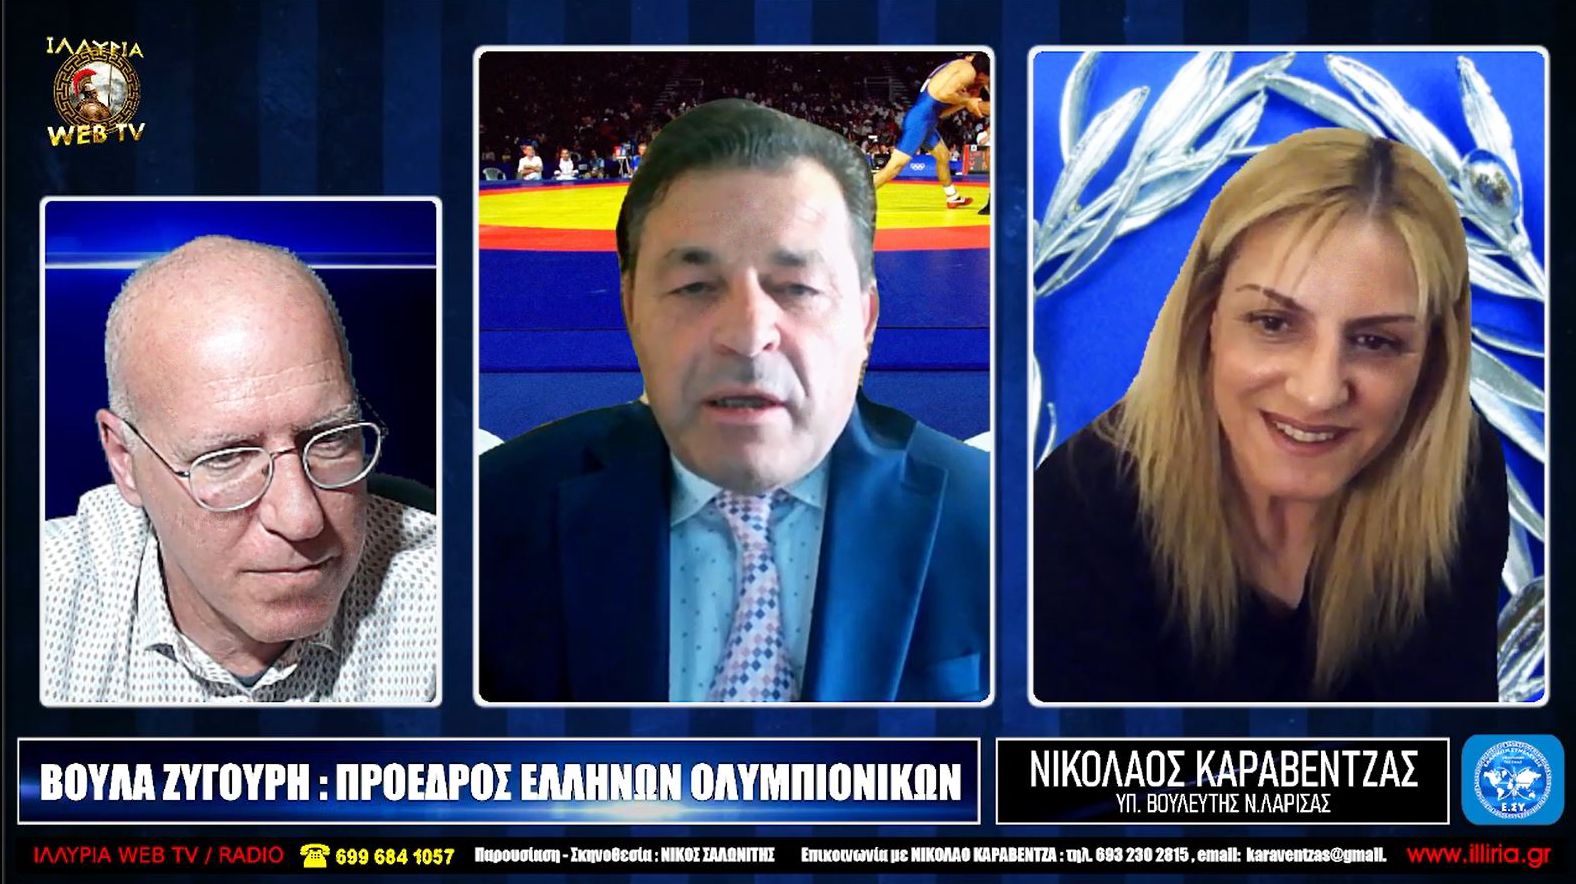 Νικόλαος Καραβέντζας - Βούλα Ζυγούρη - Μια συζήτηση για το παρόν πλαίσιο του Ελληνικού Αθλητισμού και τους παράγοντες που το διαμόρφωσαν.